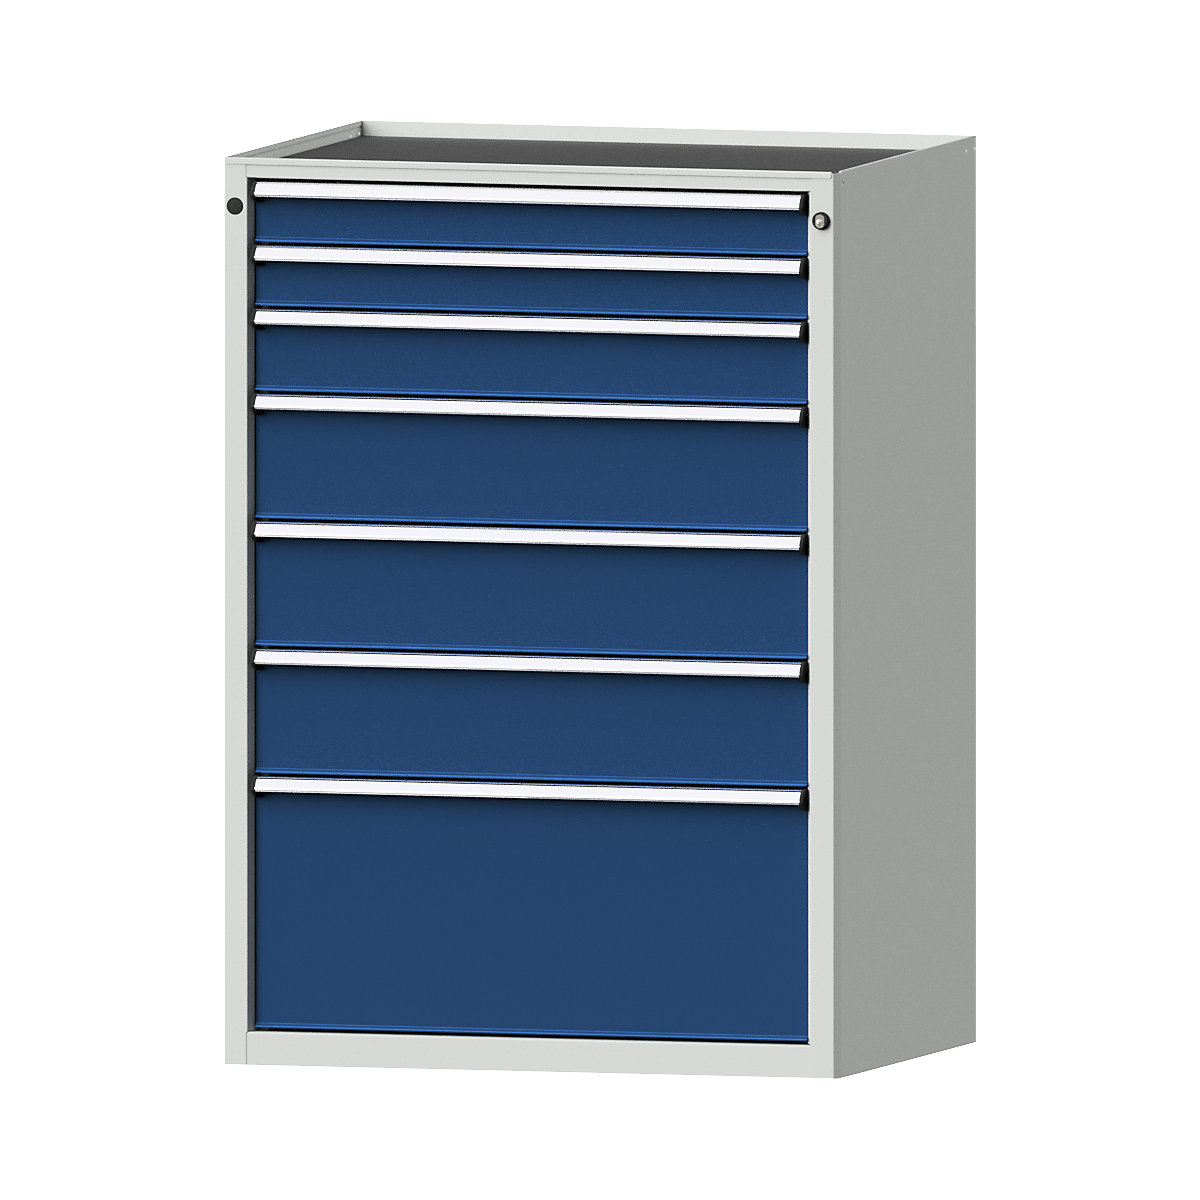 Zásuvková skříň – ANKE, š x h 910 x 675 mm, nosnost zásuvky 200 kg, 7 zásuvek, výška 1280 mm, čelo hořcově modré